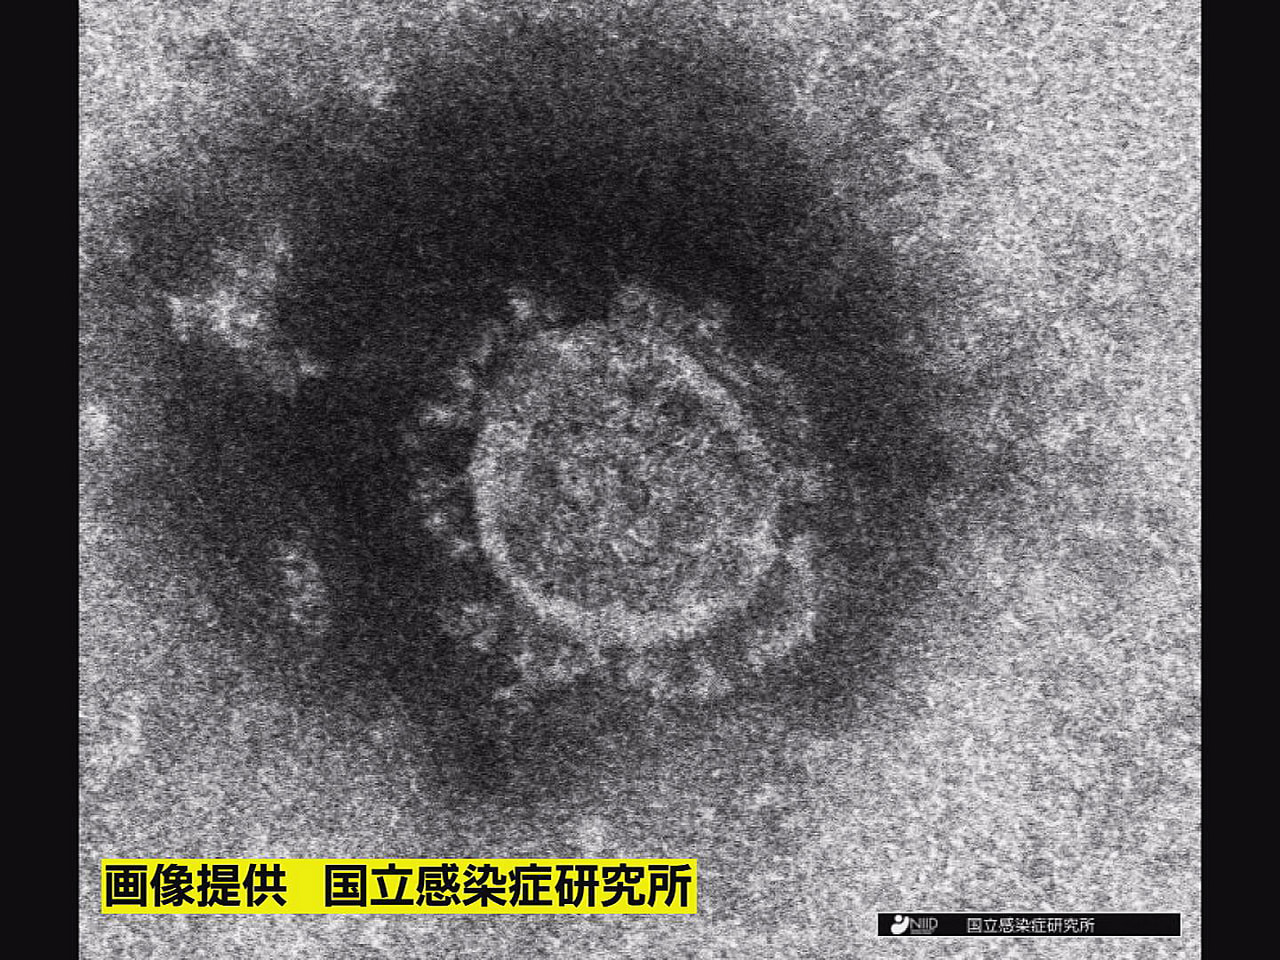 岐阜県は２８日、新型コロナウイルスの新規感染者が５７３人確認されたと発表しました...